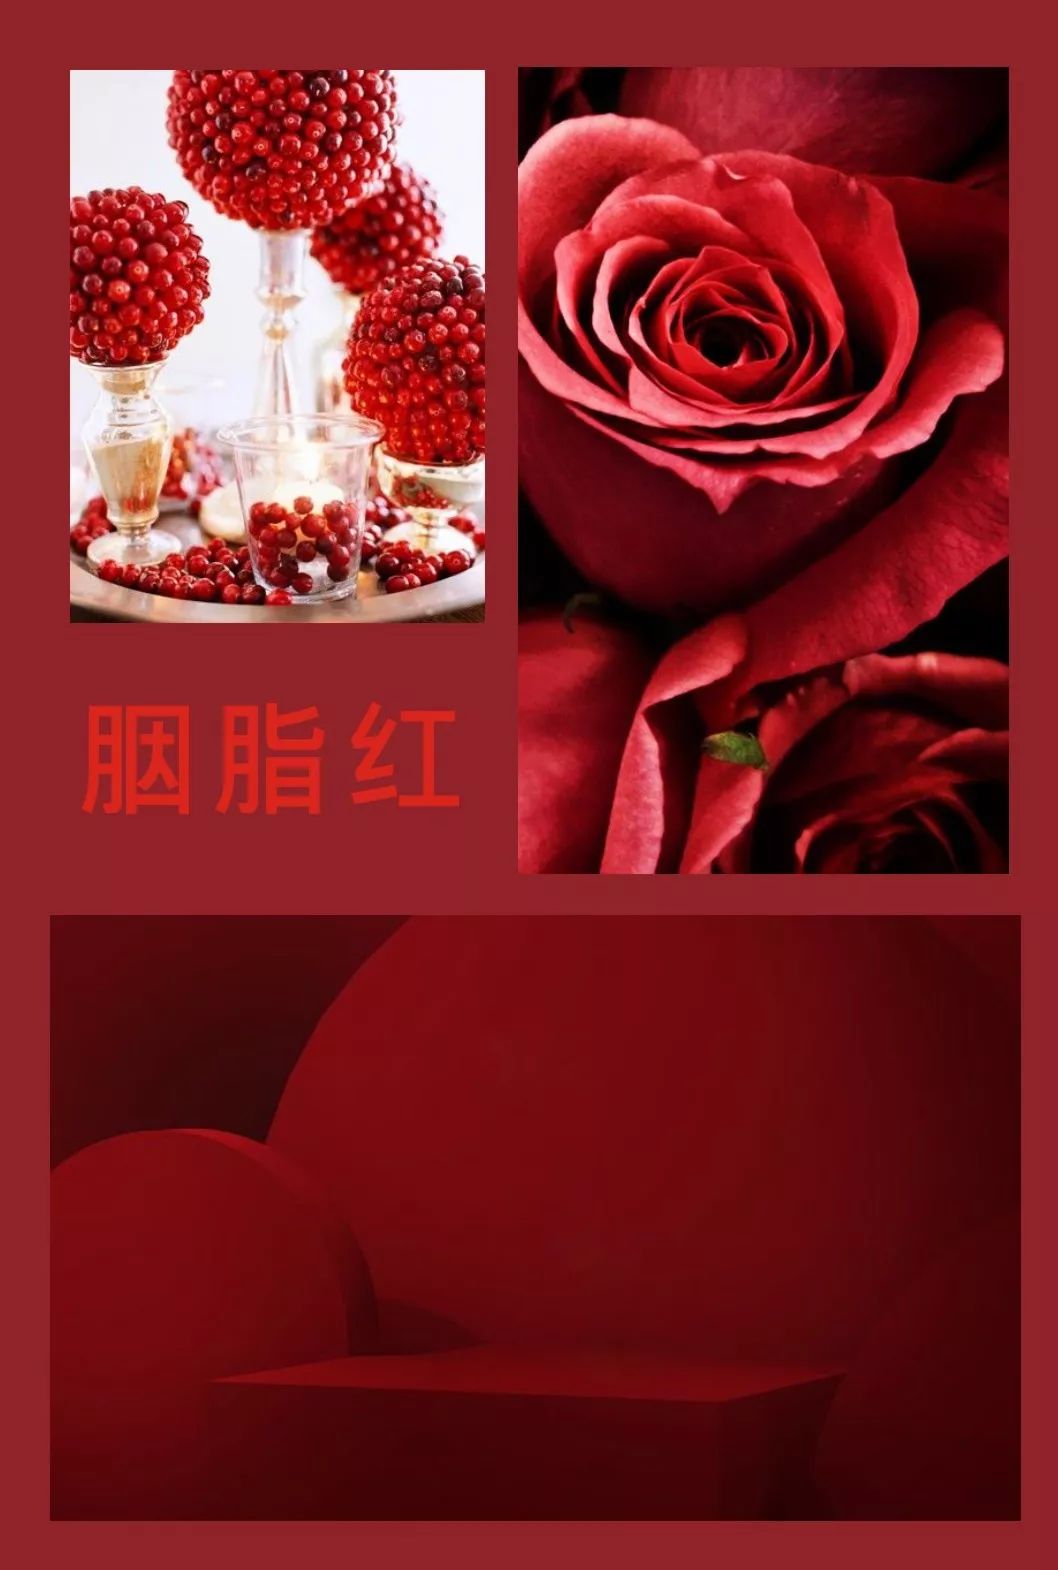 胭脂红-中国传统色彩名称,盛大的有音乐般流动感的红色.